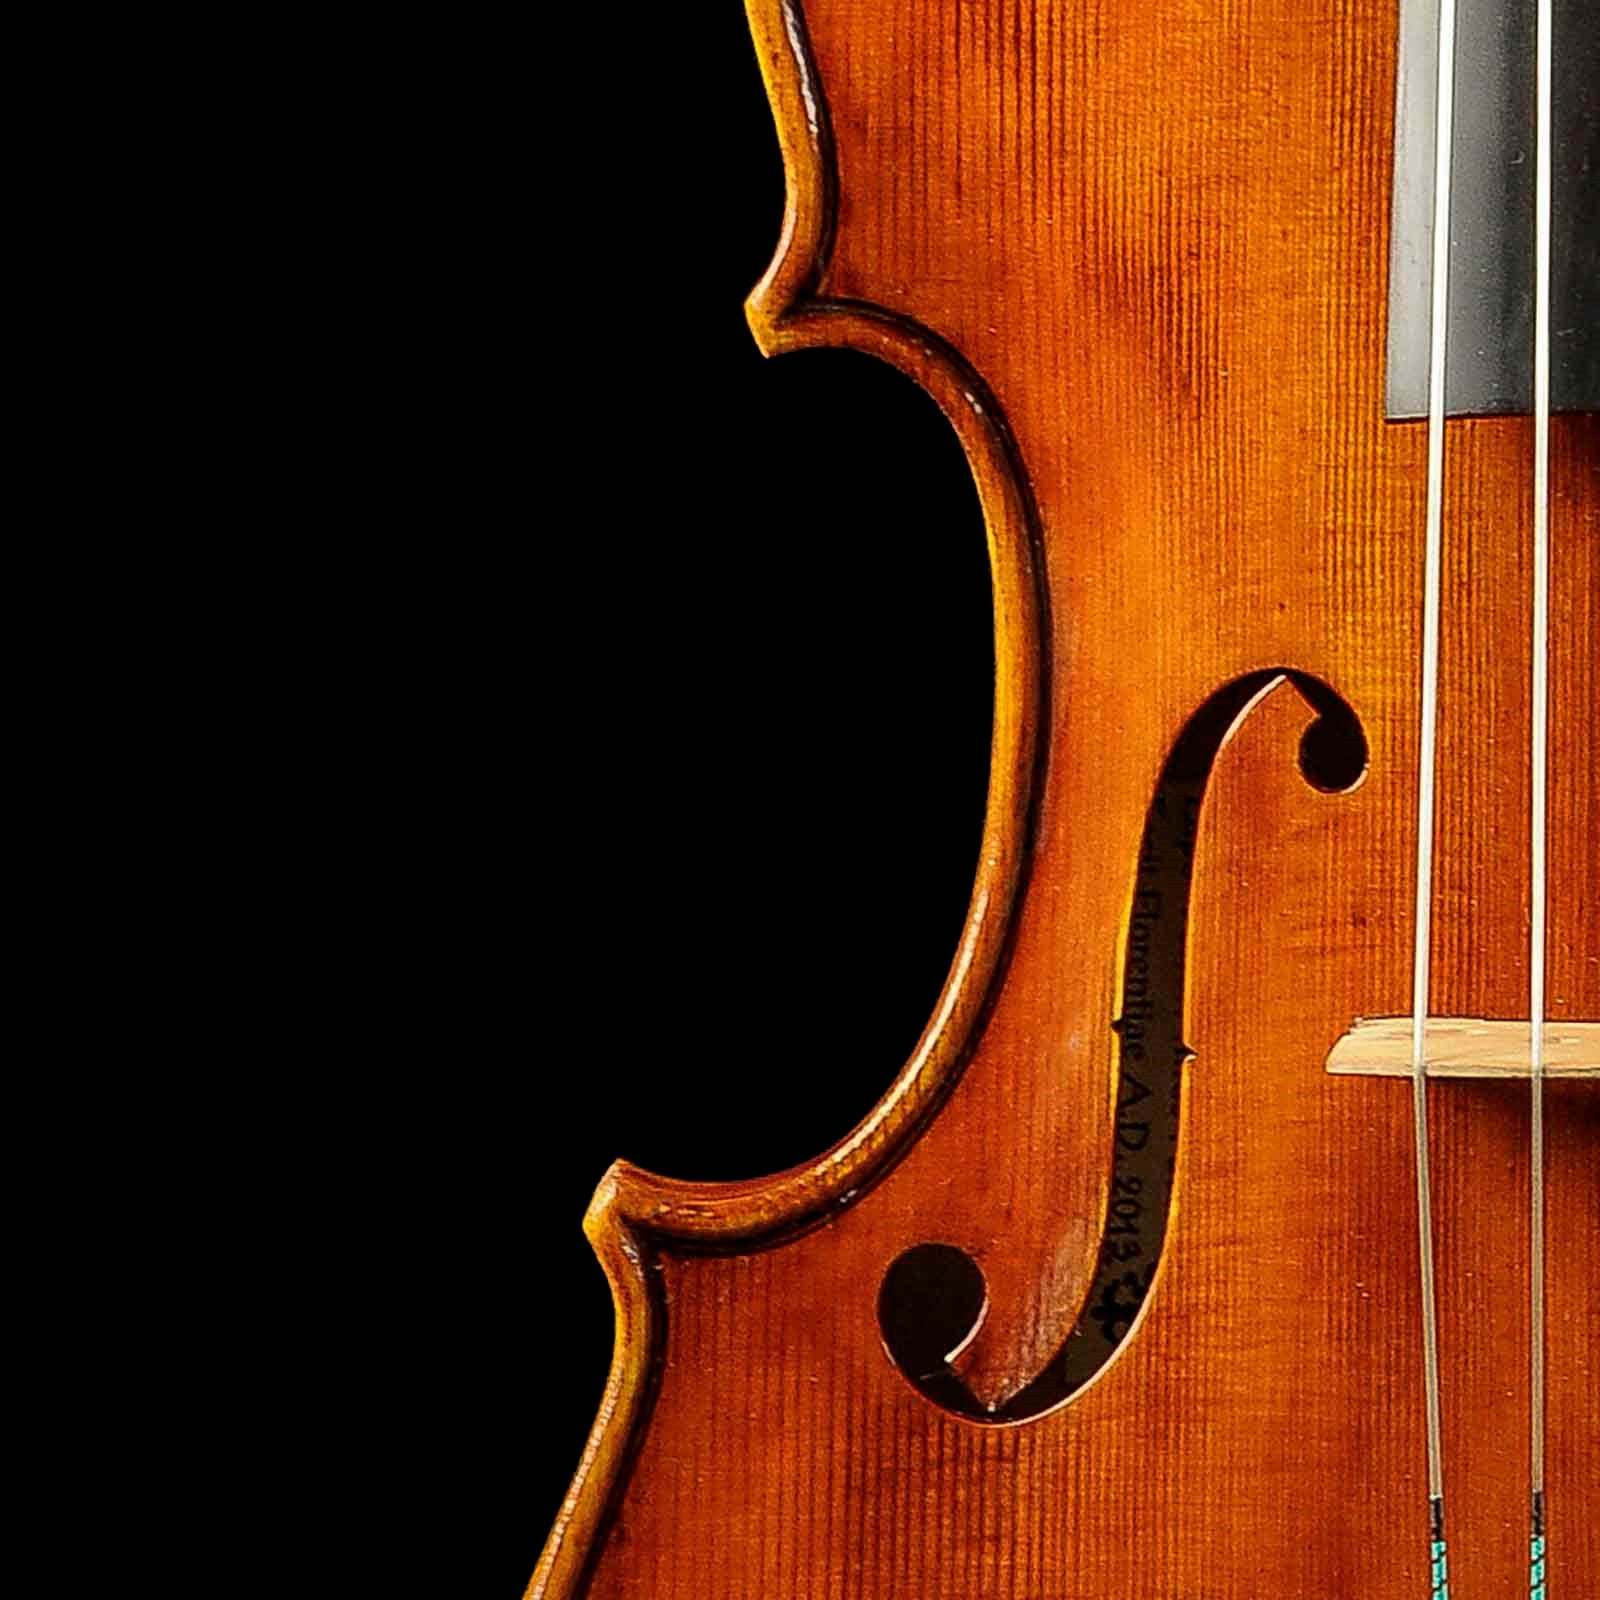 Antonio Stradivari Cremona 1672 “Populus“ cm 42 - Image 6